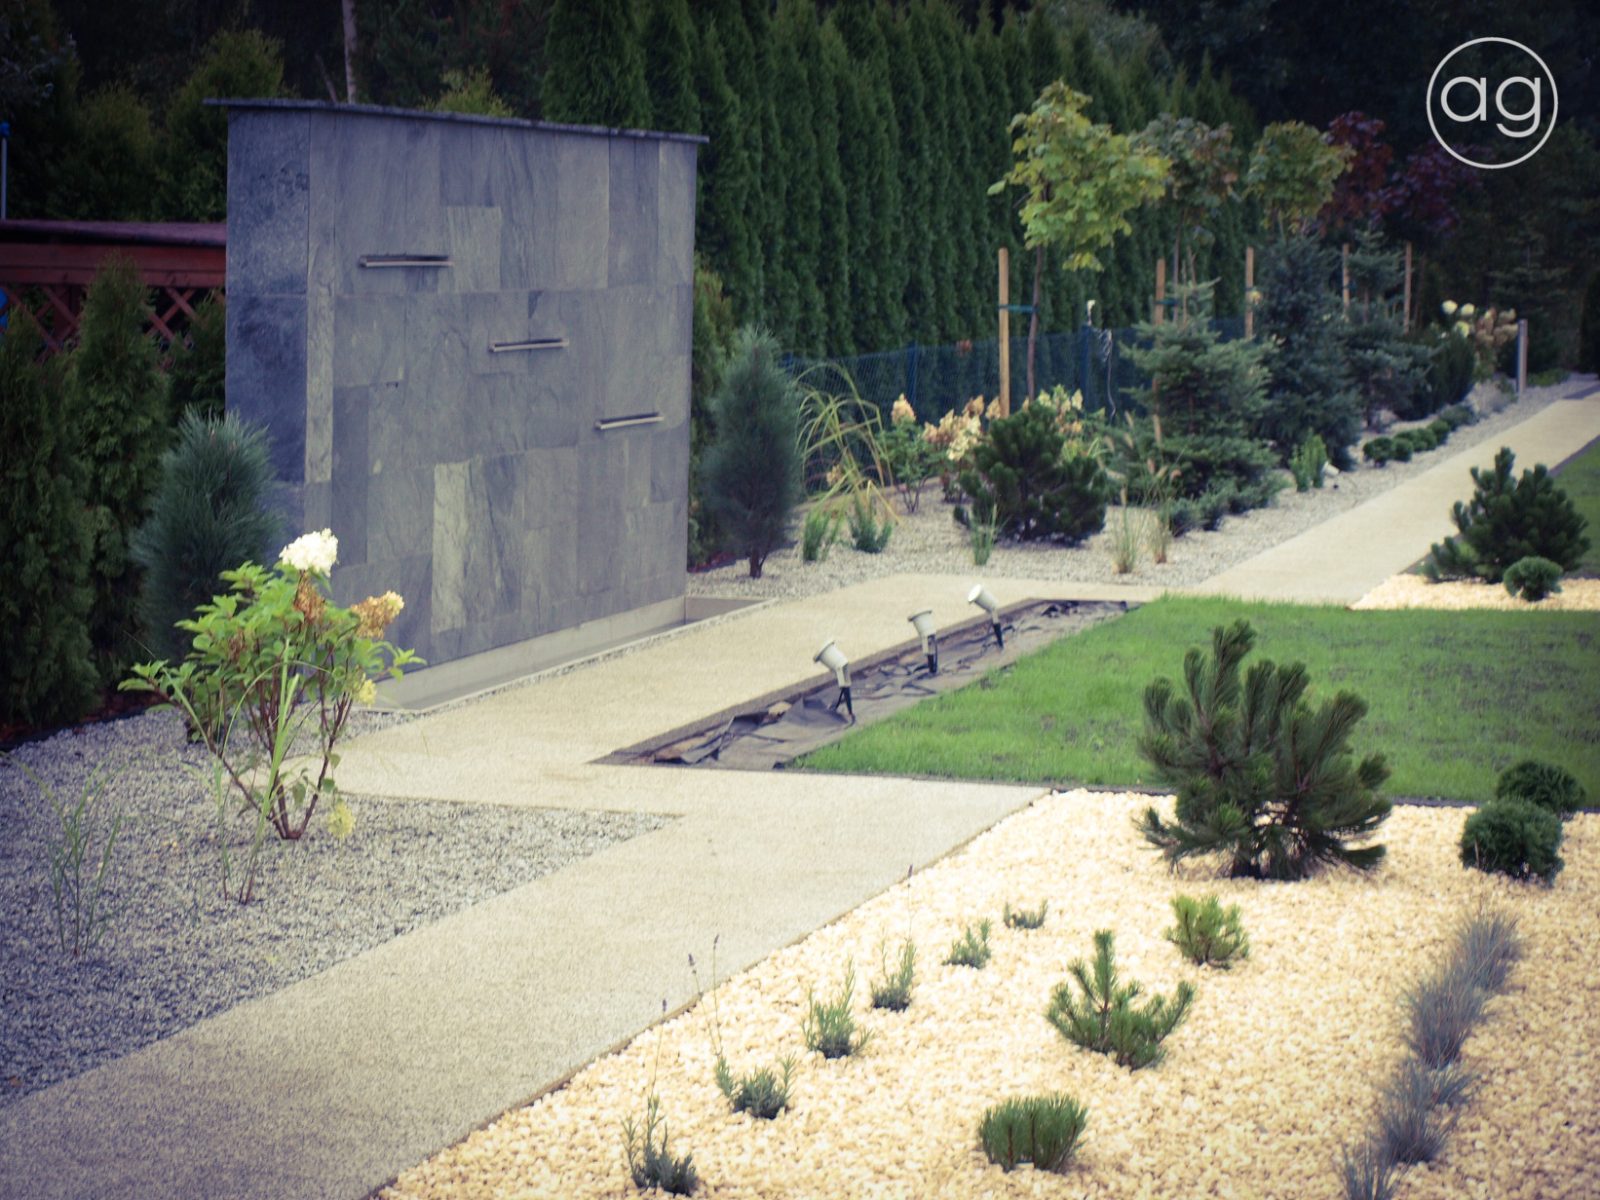 ściana wodna w ogrodzie, kaskada, agnieszkagertnerblog, Agnieszka Gertner, projektowanie ogrodów